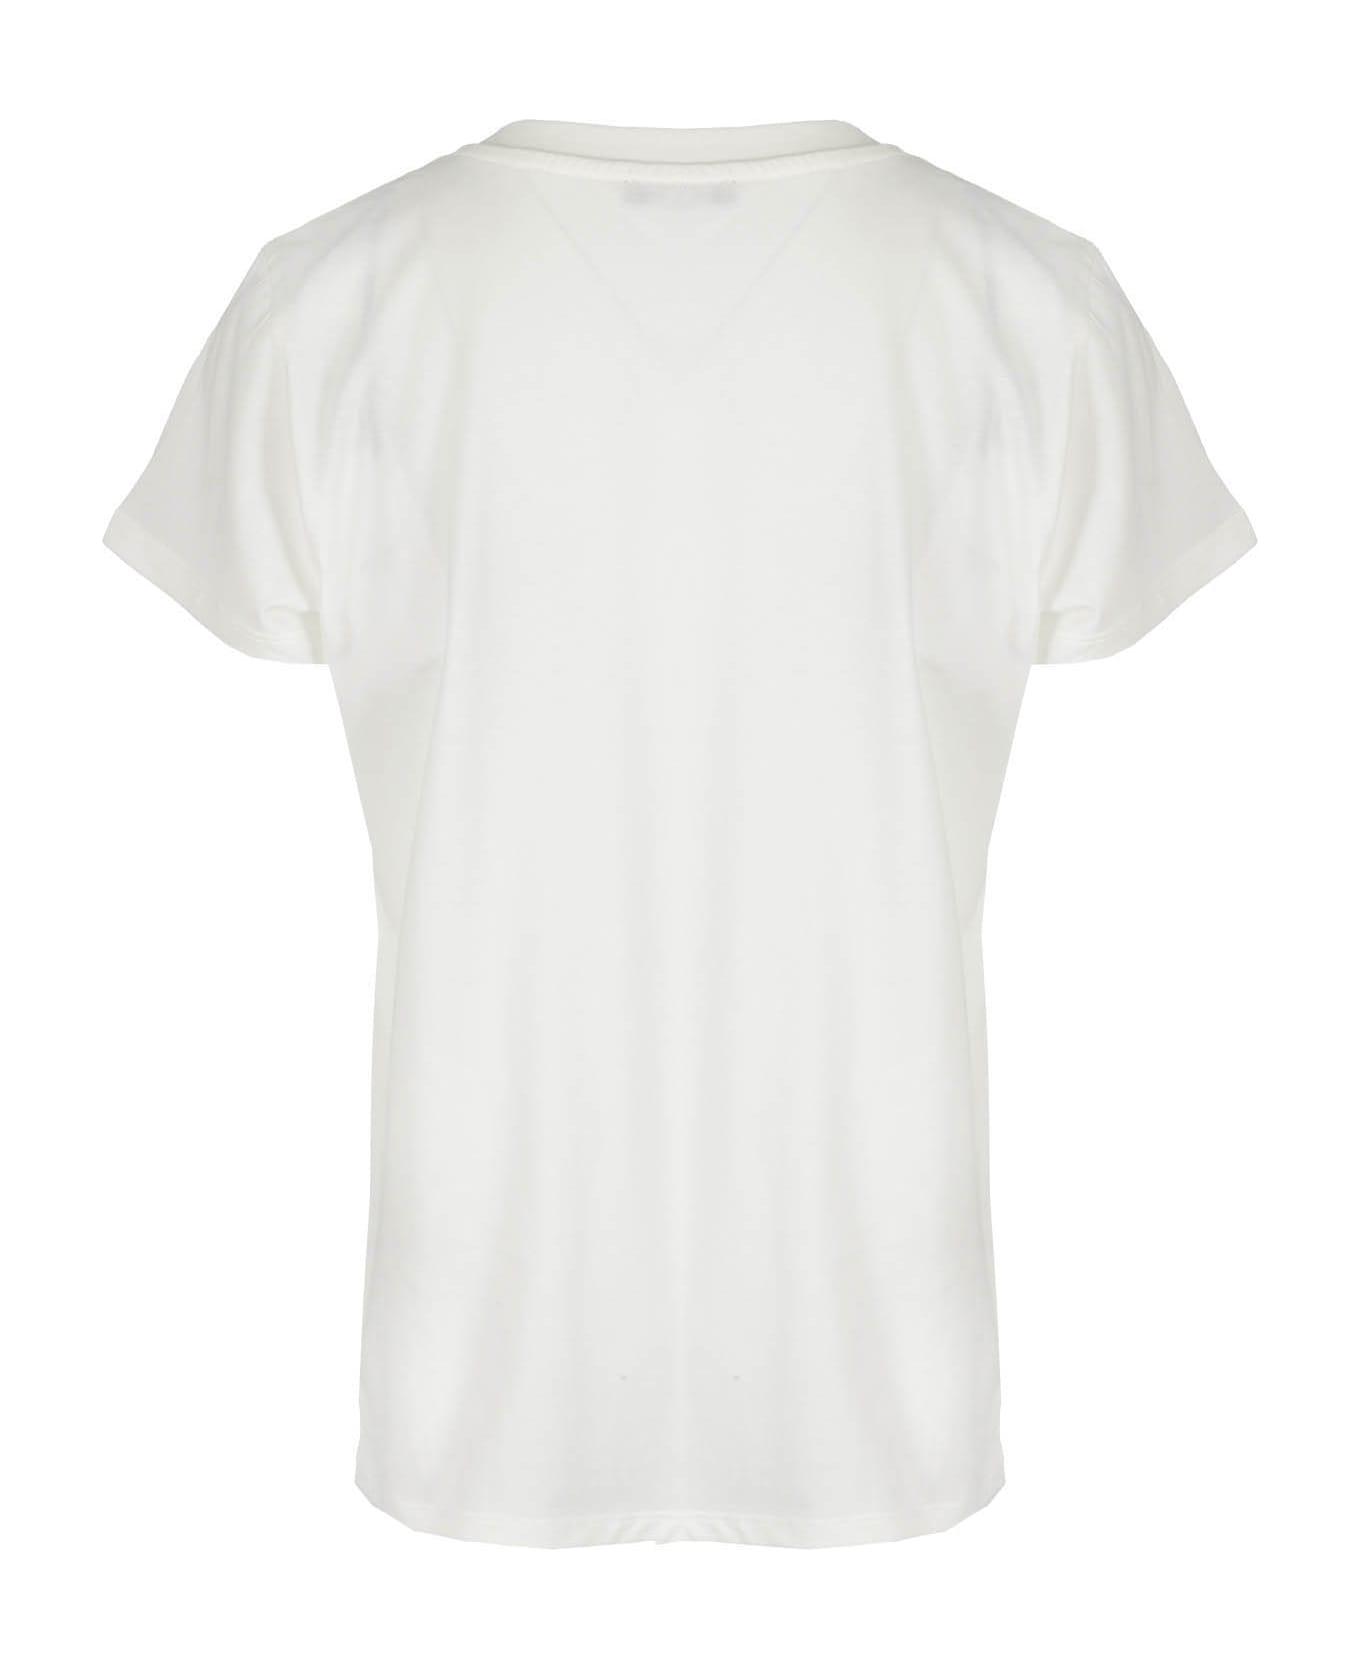 Balmain Tshirt - Ne Ivory Black Tシャツ＆ポロシャツ